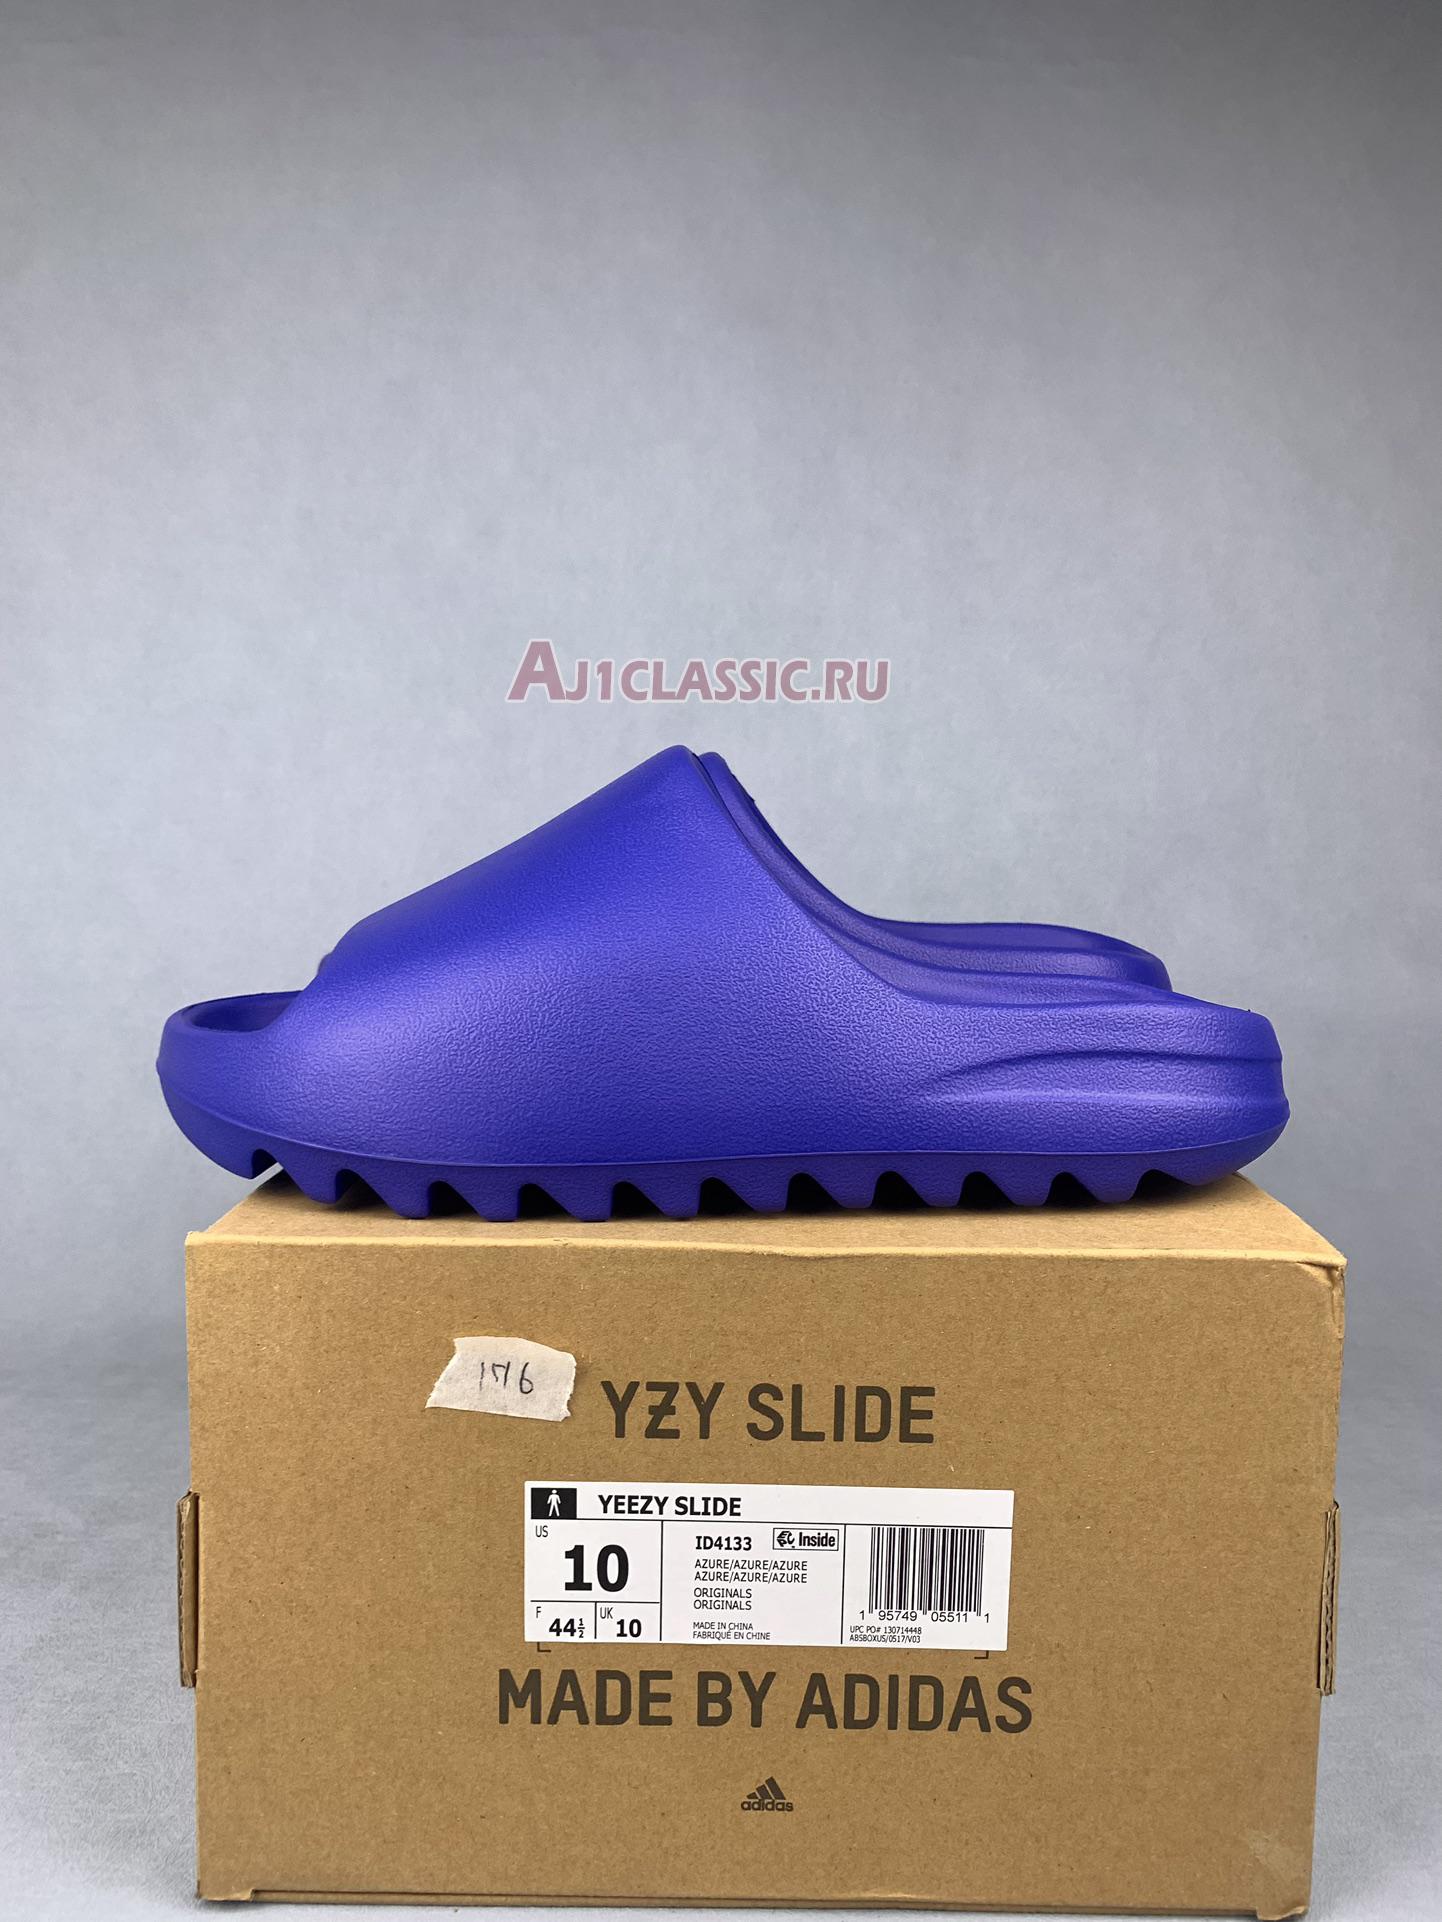 Adidas Yeezy Slide "Azure" ID4133